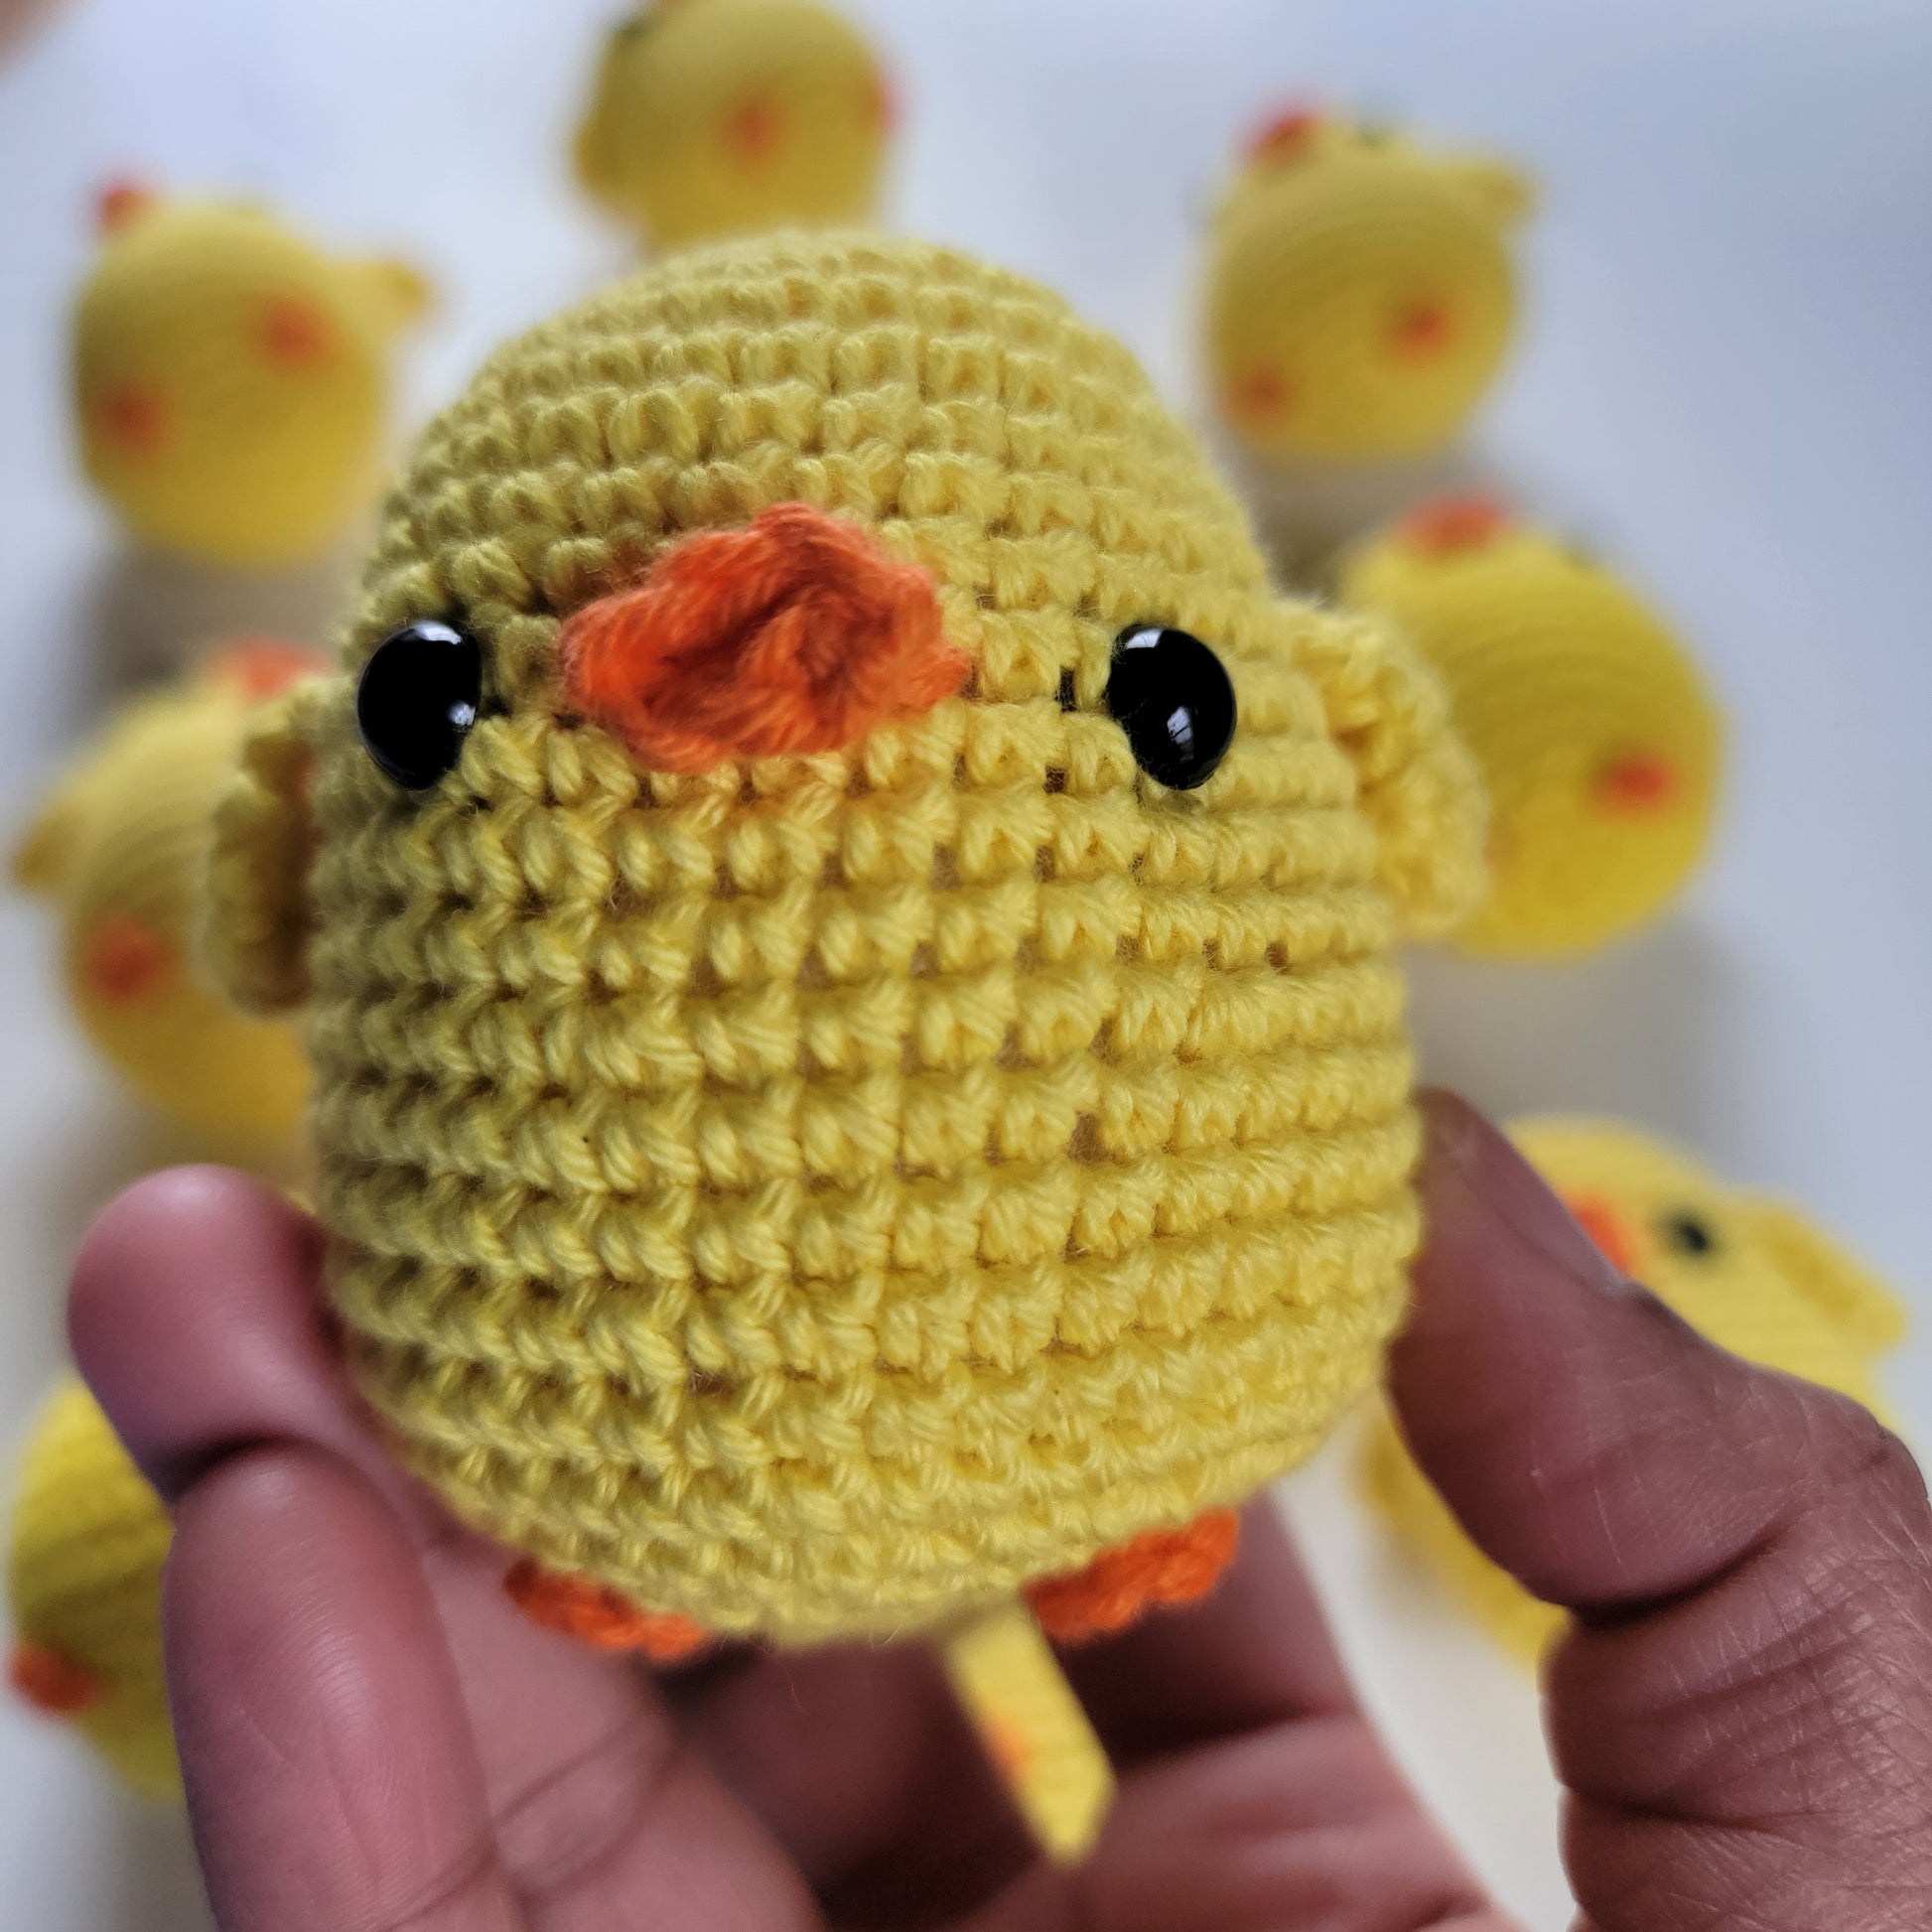 Handmade crochet toys